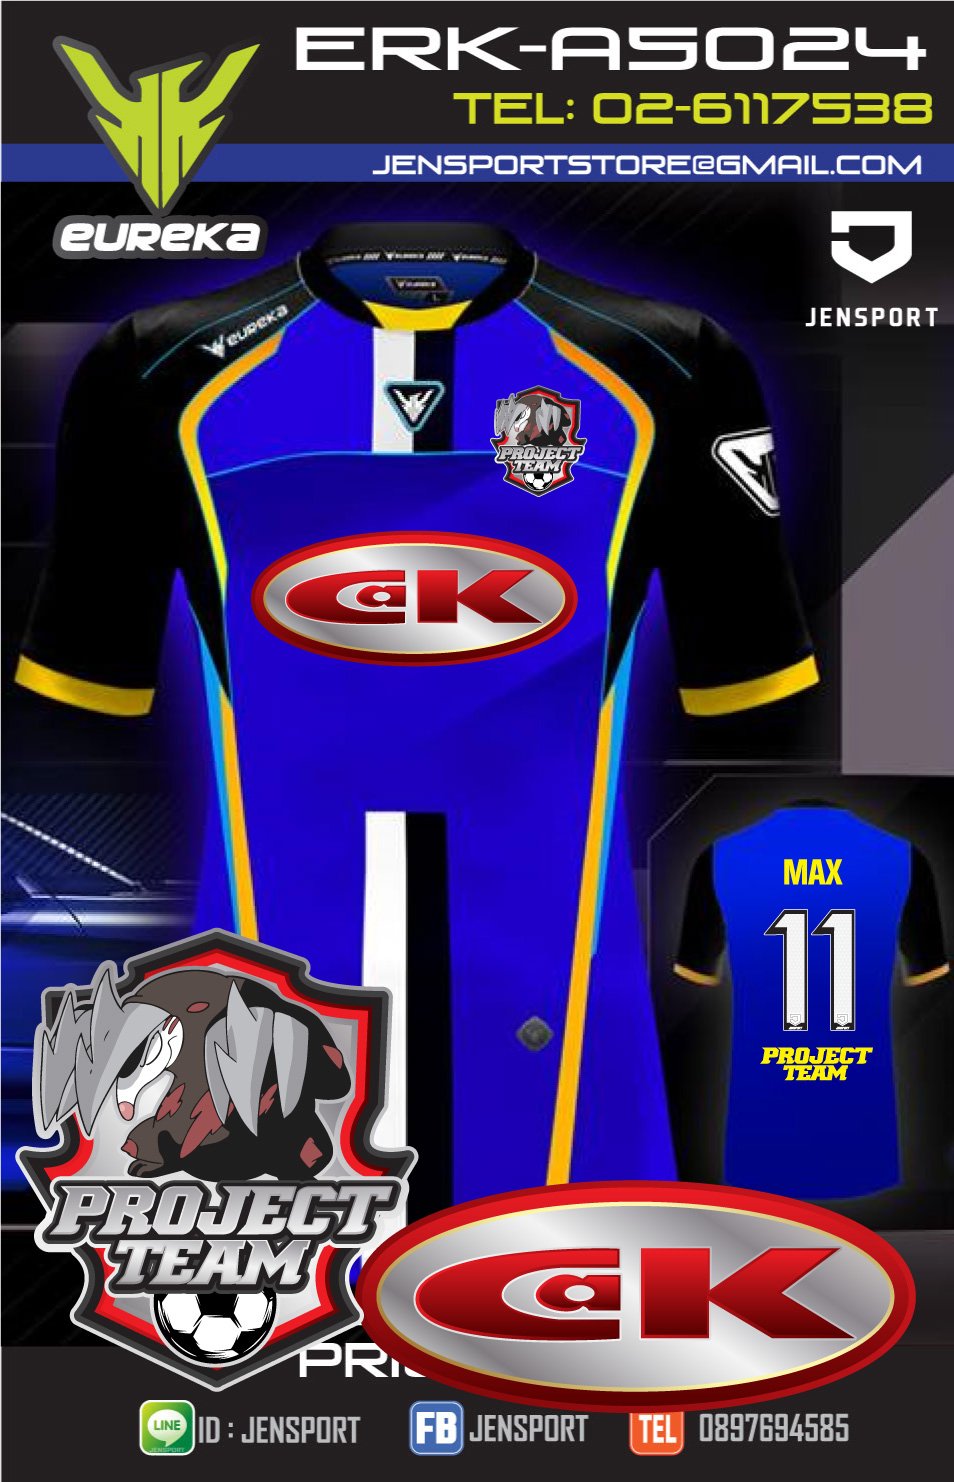 ​เสื้อฟุตบอล EUREKA ERK-A5024 สีน้พเงิน ทีม Project team-CAK